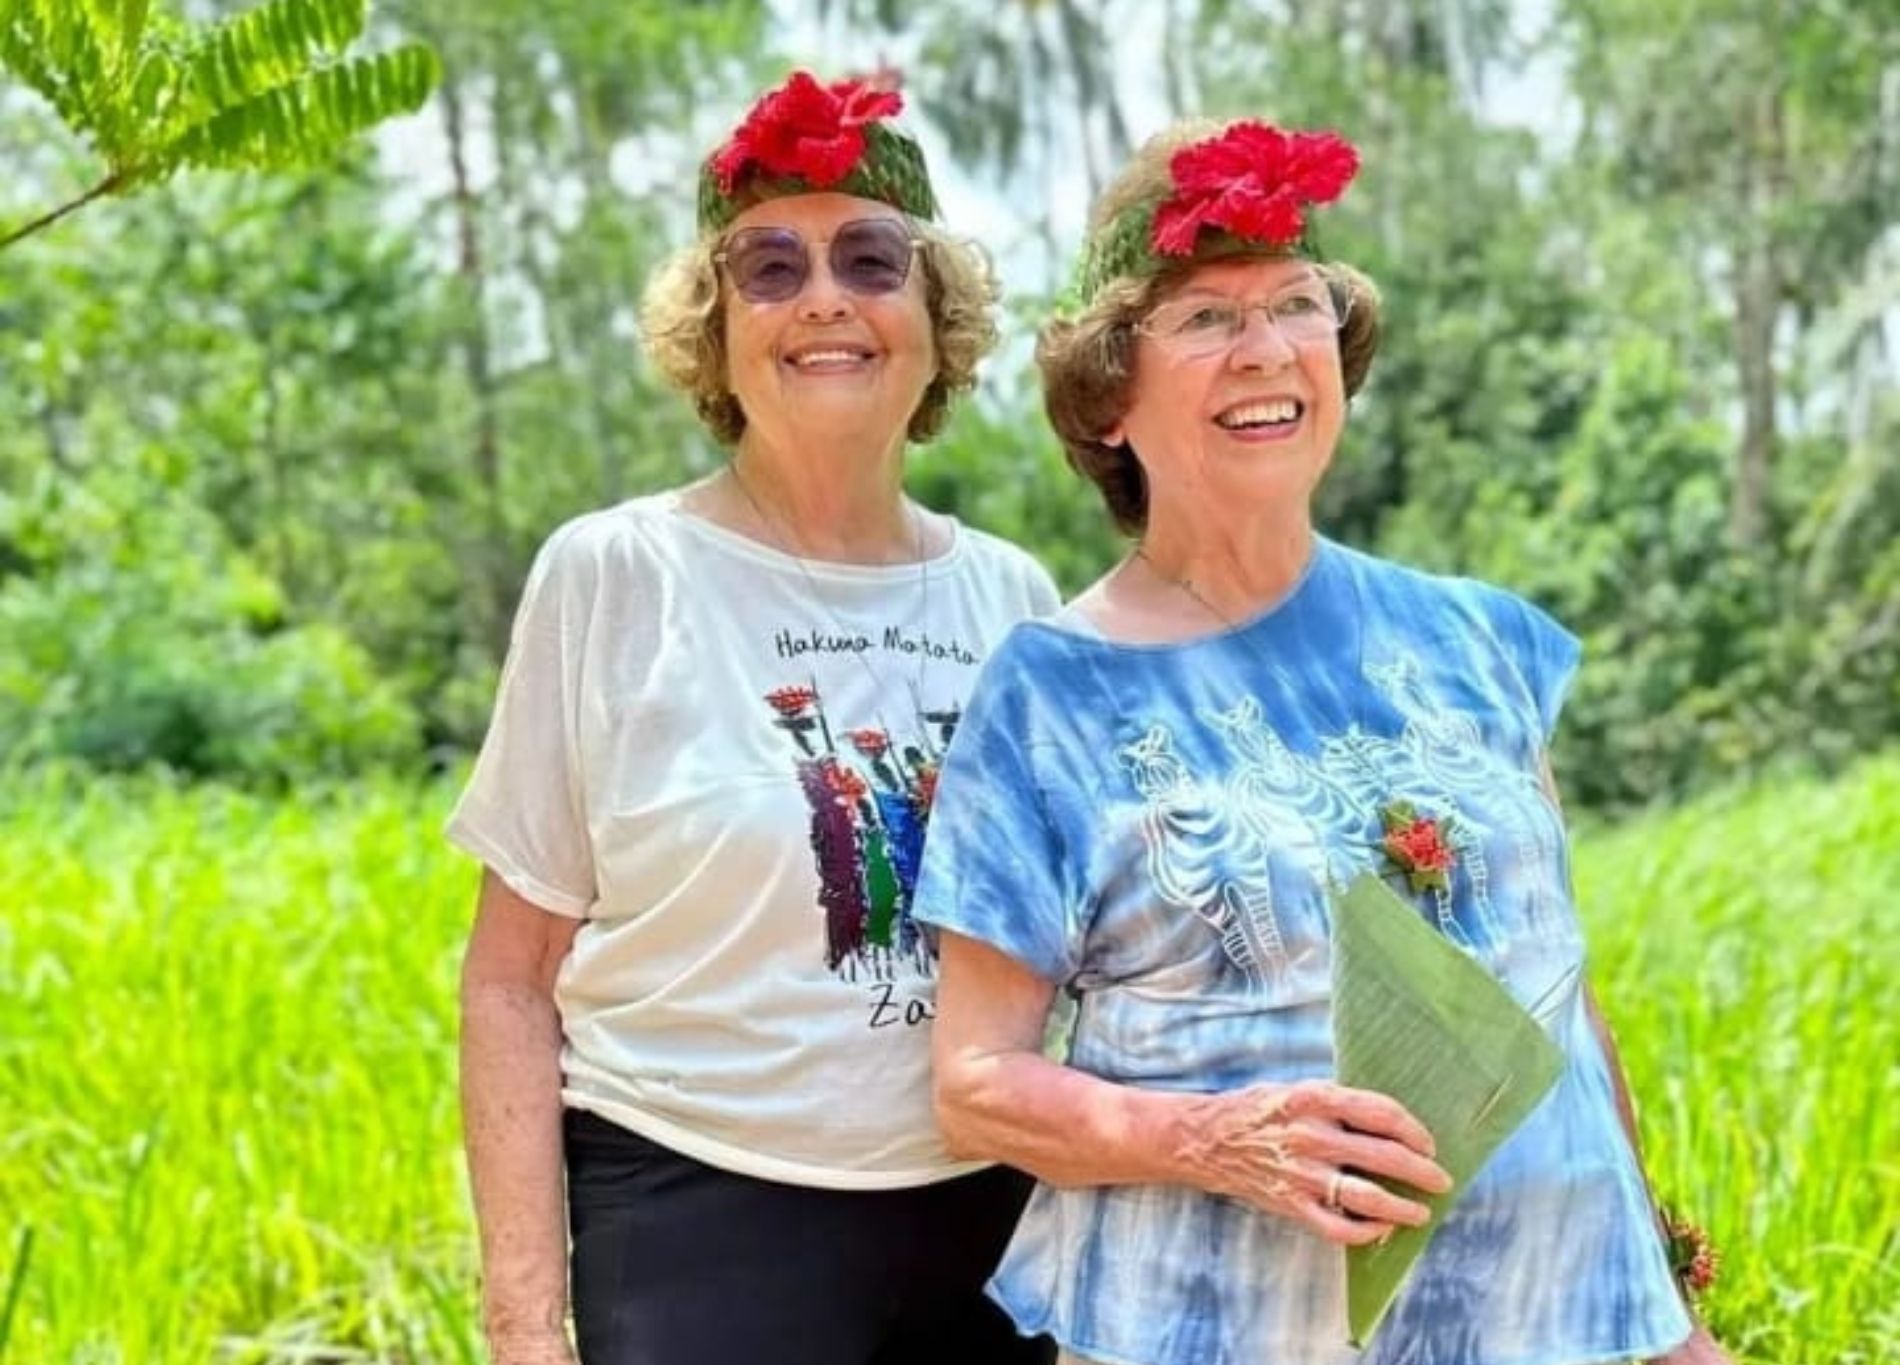 Dos mujeres dan la vuelta al mundo en 80 días a los 81 años: "Nos sentimos muy afortunadas". Foto: Instagram